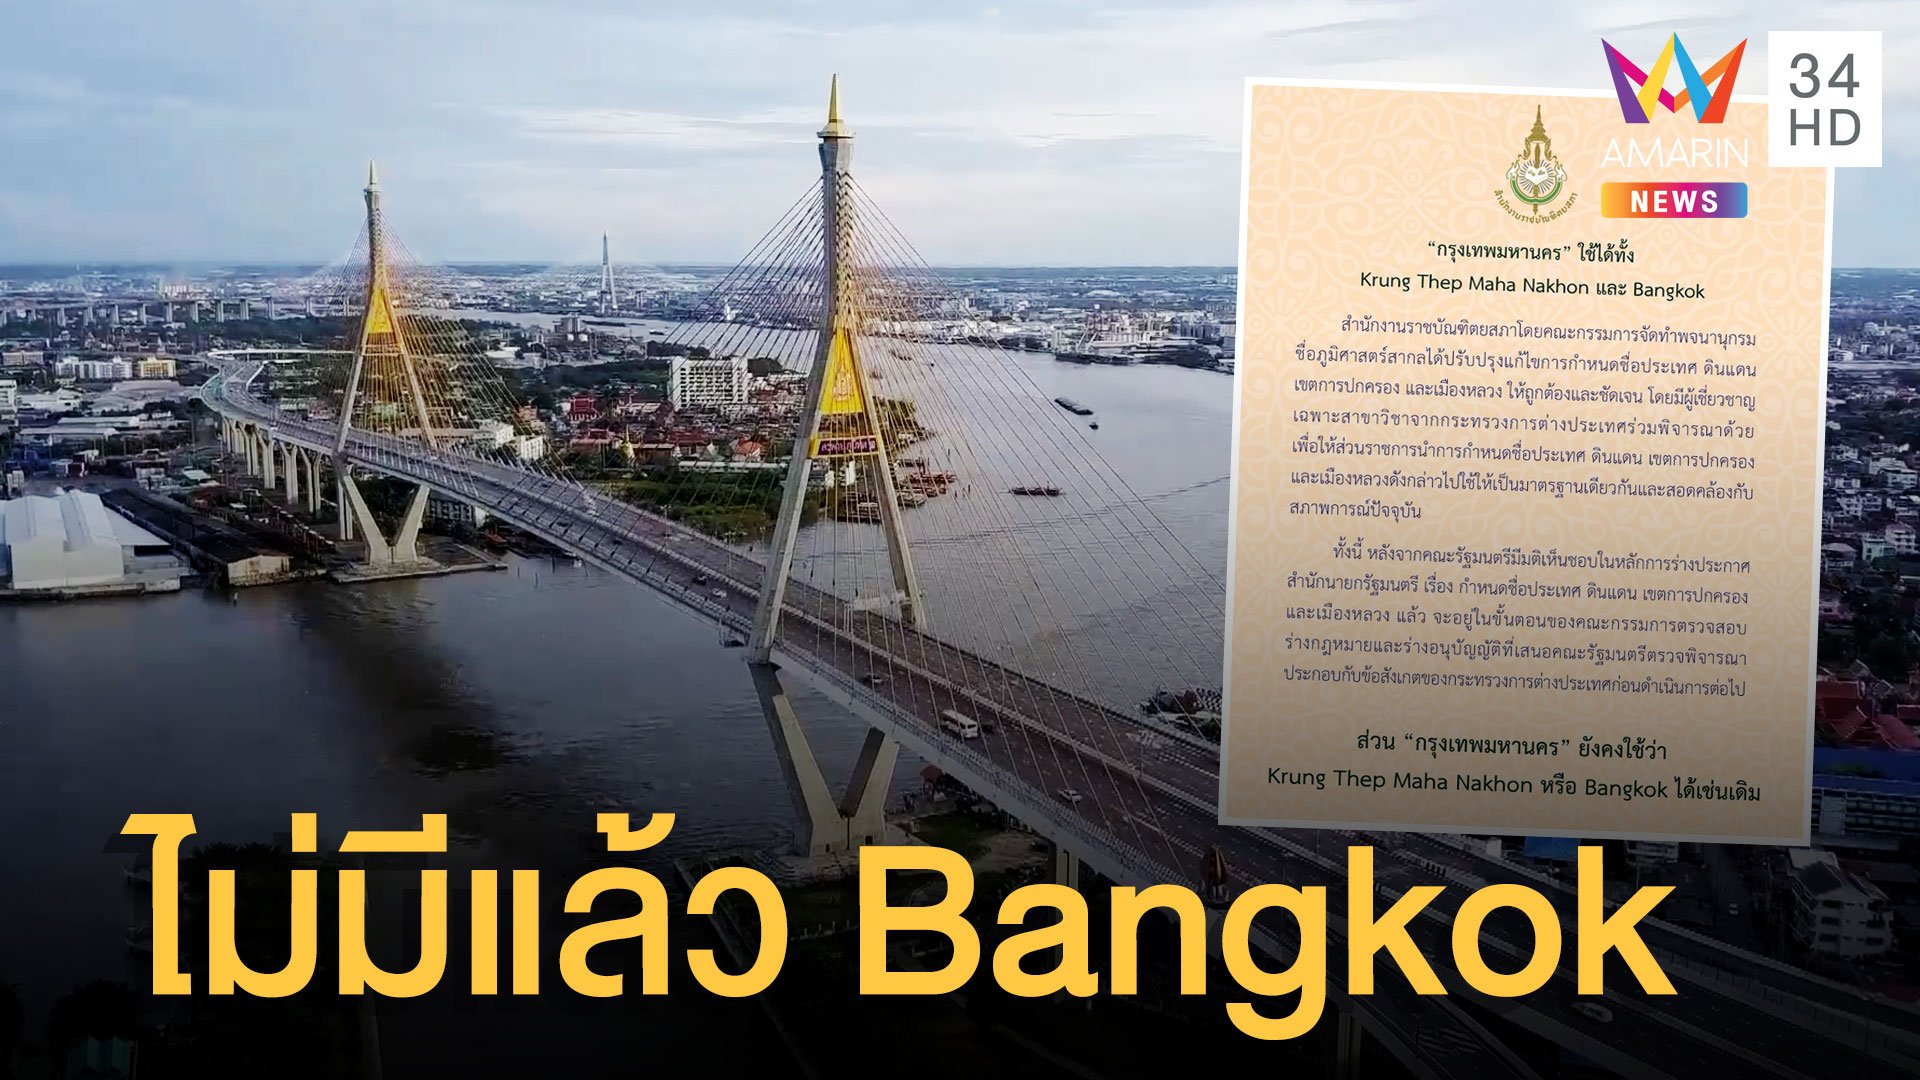 ราชบัณฑิตยสภา ประกาศเปลี่ยนชื่อ Bangkok เป็น Krung Thep Mahanakhon | ข่าวอรุณอมรินทร์ | 16 ก.พ. 65 | AMARIN TVHD34